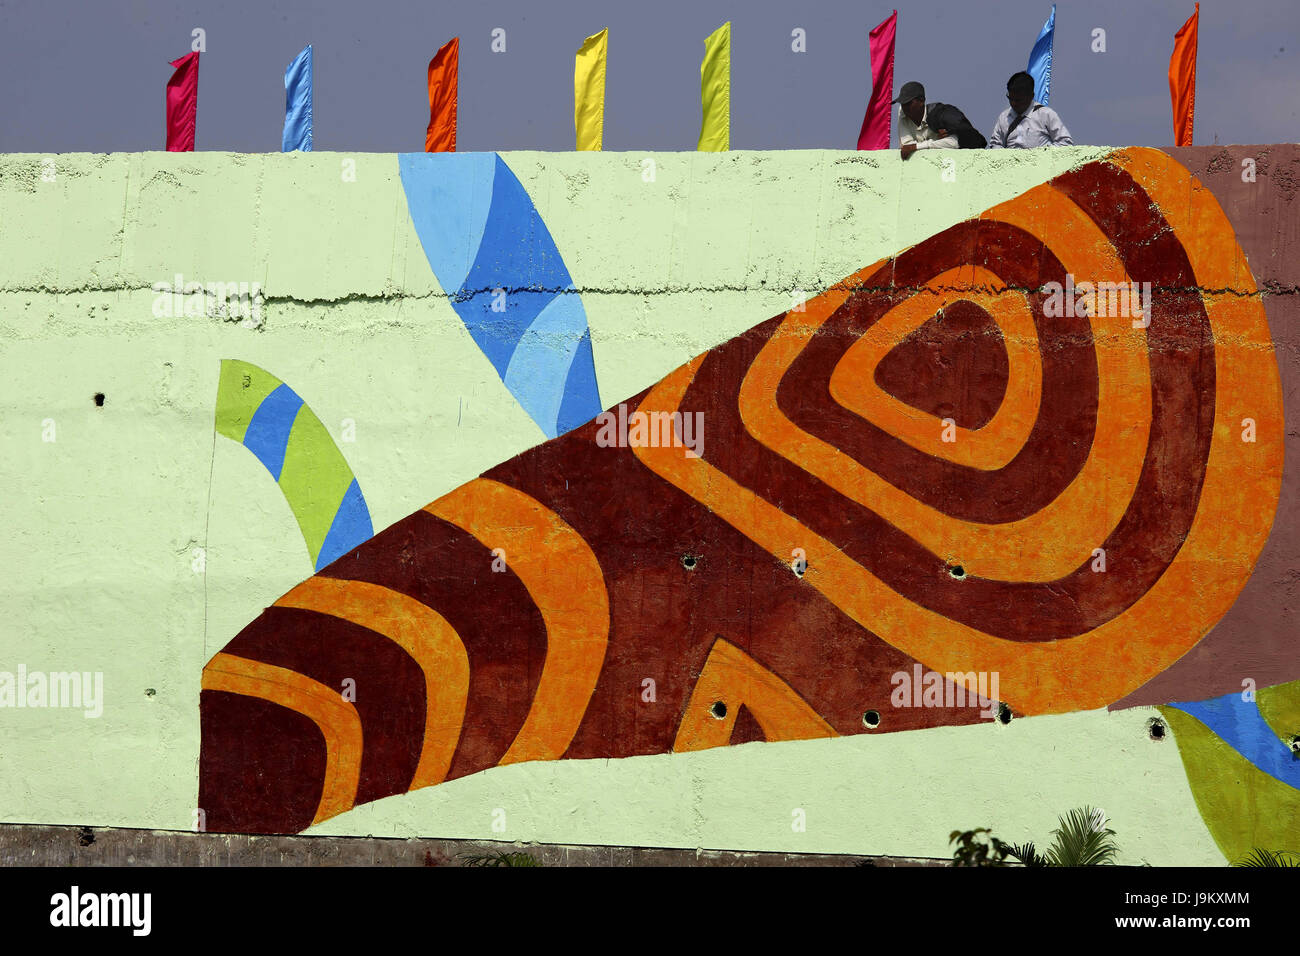 Peinture murale sur la passerelle pendant les Jeux du Commonwealth pour la jeunesse, Maharashtra, Inde, Asie Banque D'Images